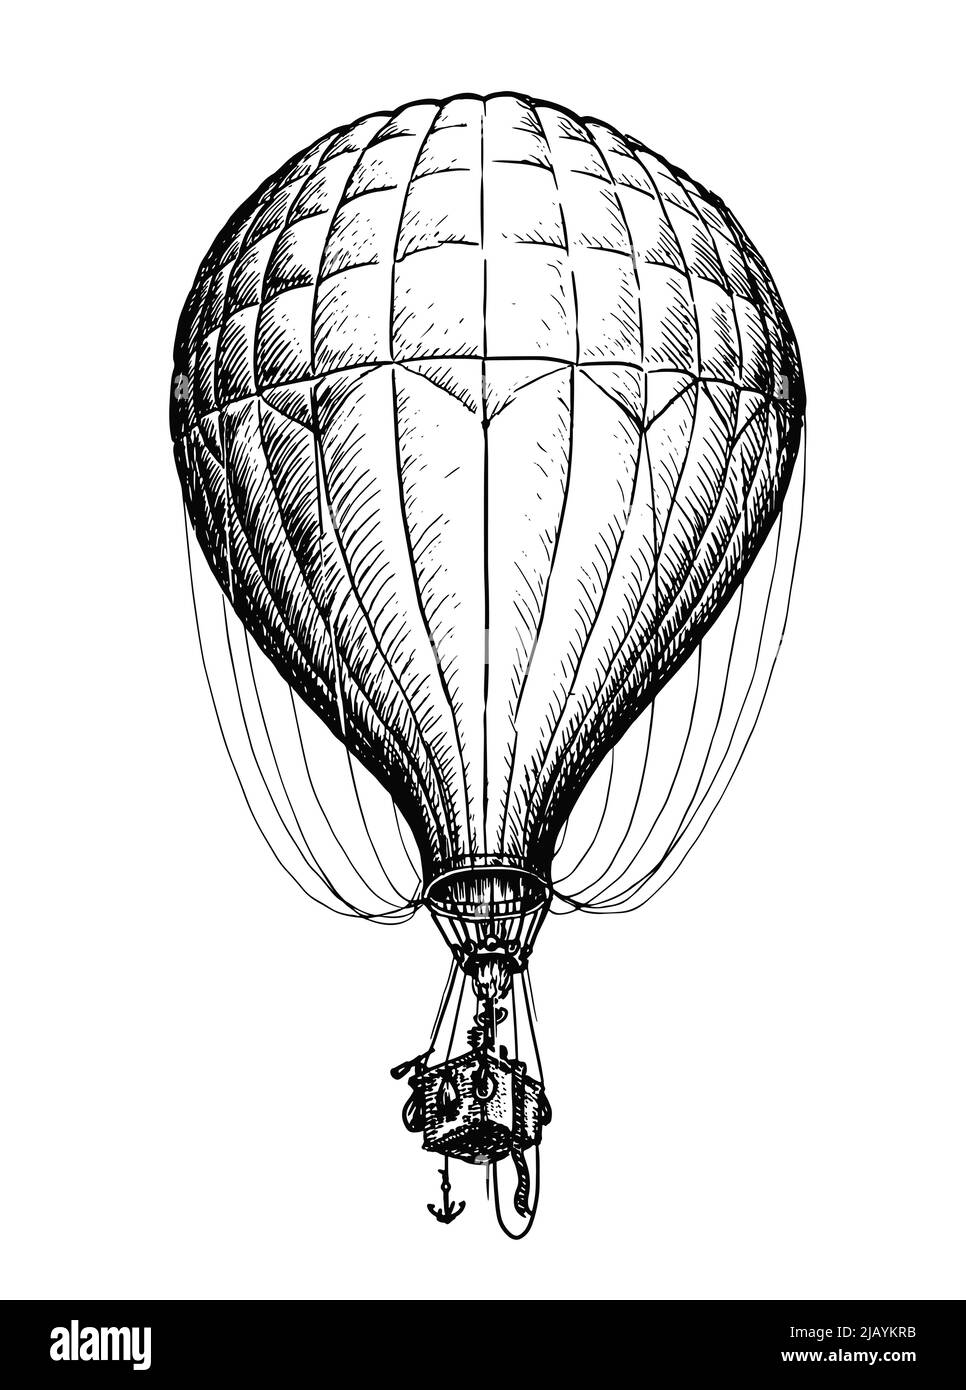 Vintage Heißluftballon mit Korb isoliert auf weißem Hintergrund. Reise, Abenteuer, Flug in Himmel Vektorgrafik Stock Vektor